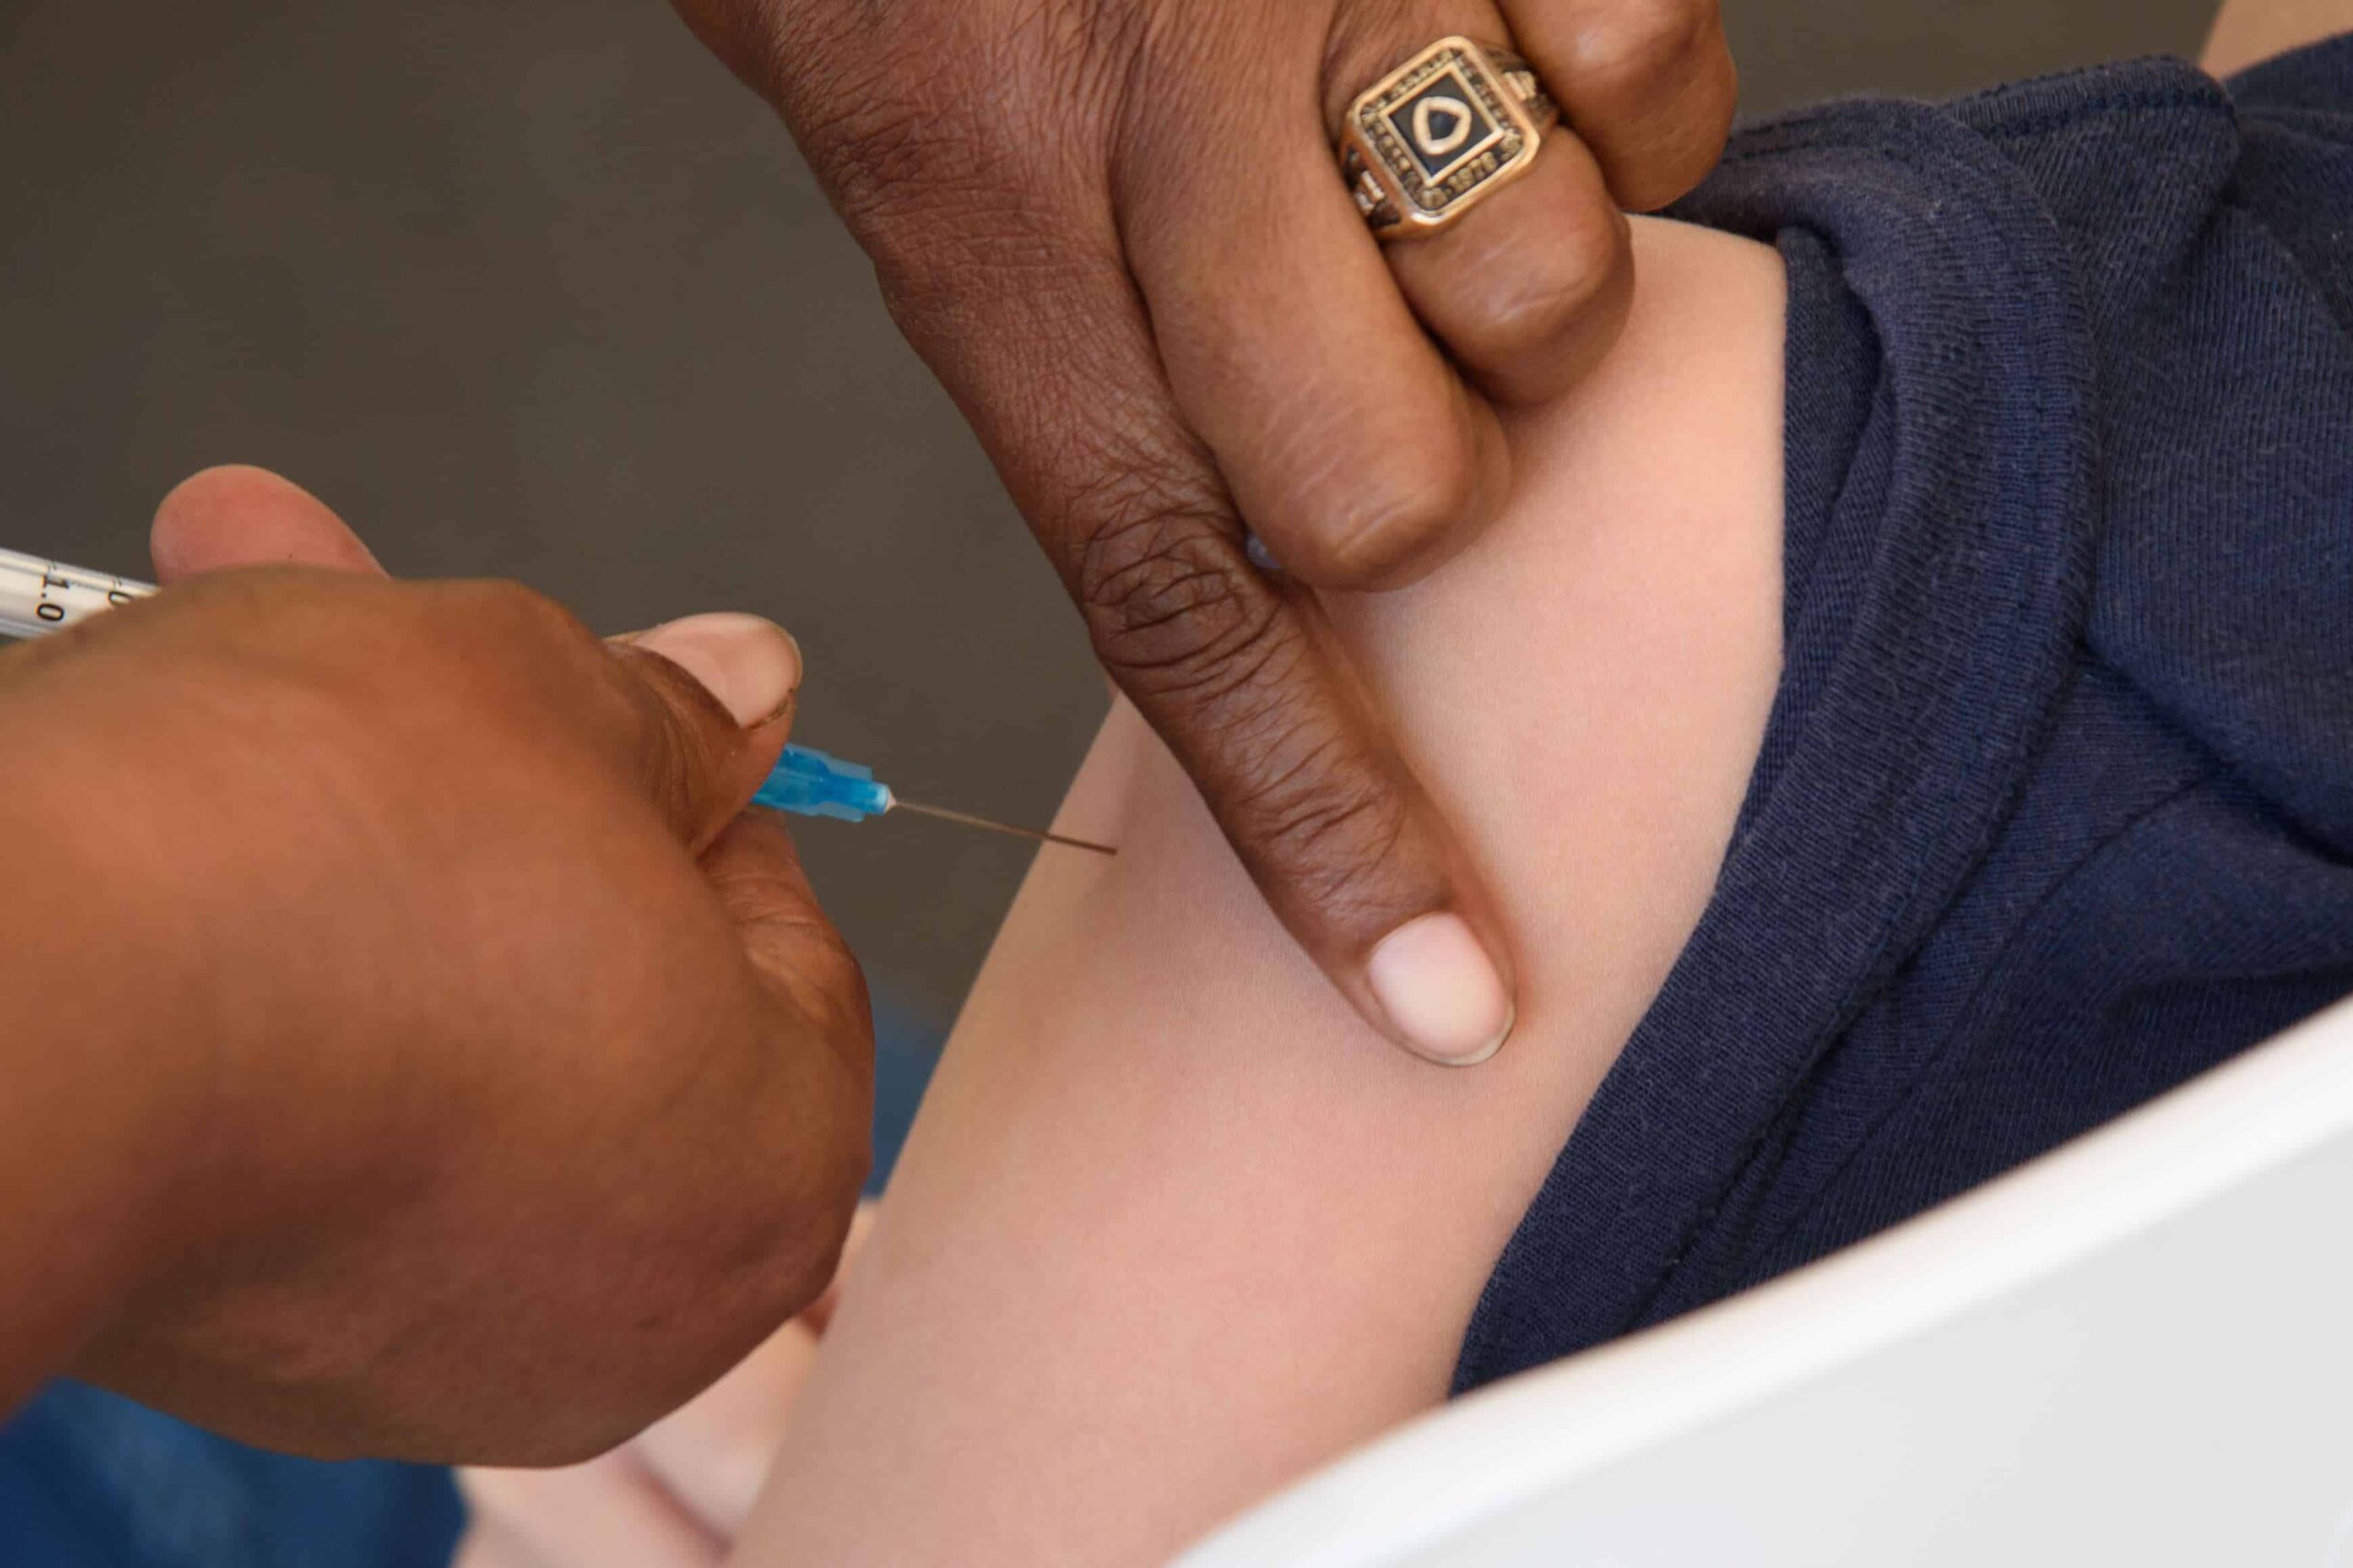 Sociedad de Vacunología: “El sarampión es totalmente prevenible con vacunas”